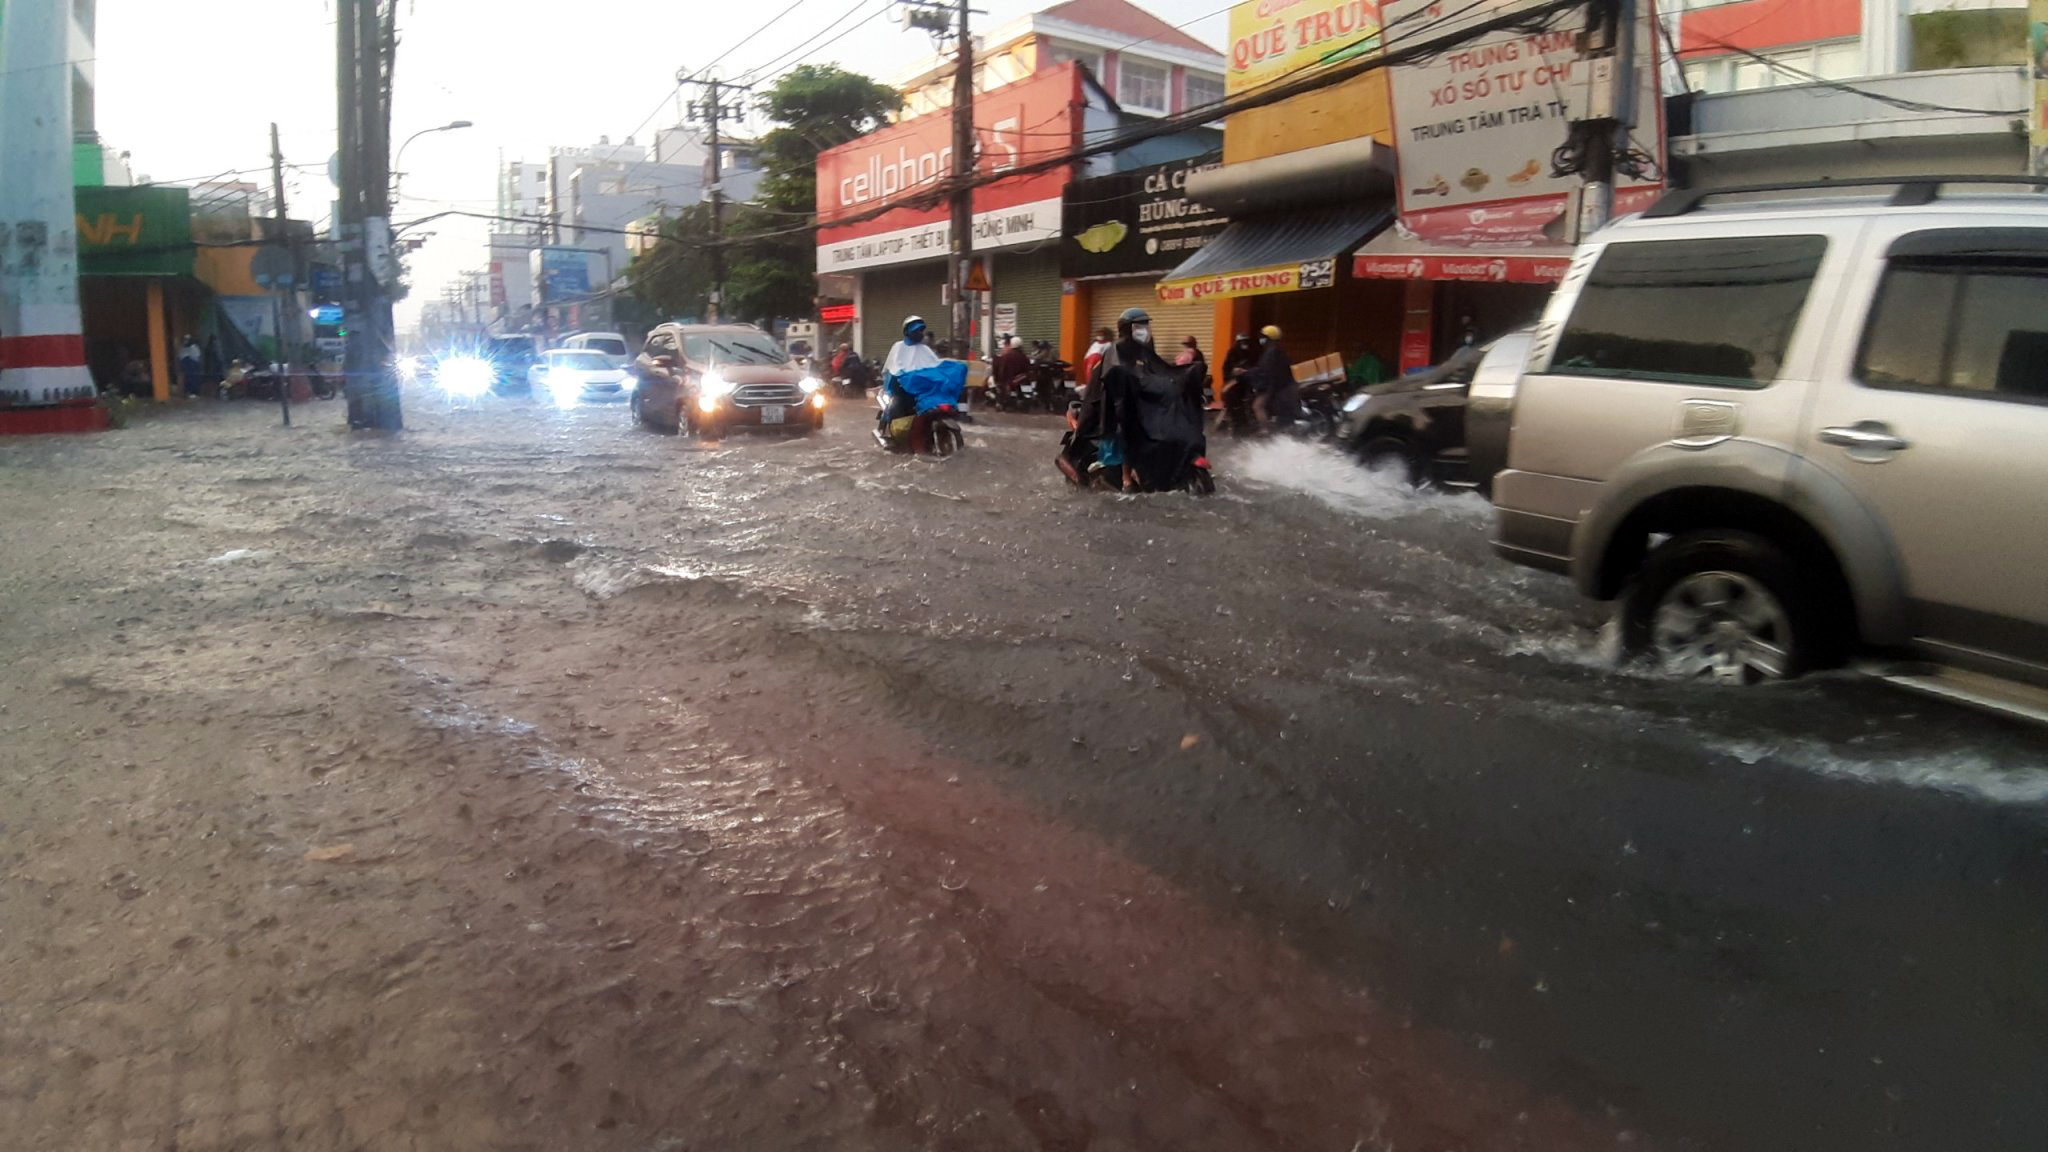 Chúng ta đã trải qua rất nhiều trận mưa lớn ở Sài Gòn nhưng cảm giác tuyệt vời được sống sót sau mỗi trận mưa là điều chắc chắn. Hãy xem những tấm ảnh đầy cảm hứng này để cảm nhận được sự đẹp của đường phố Sài Gòn dưới mưa.